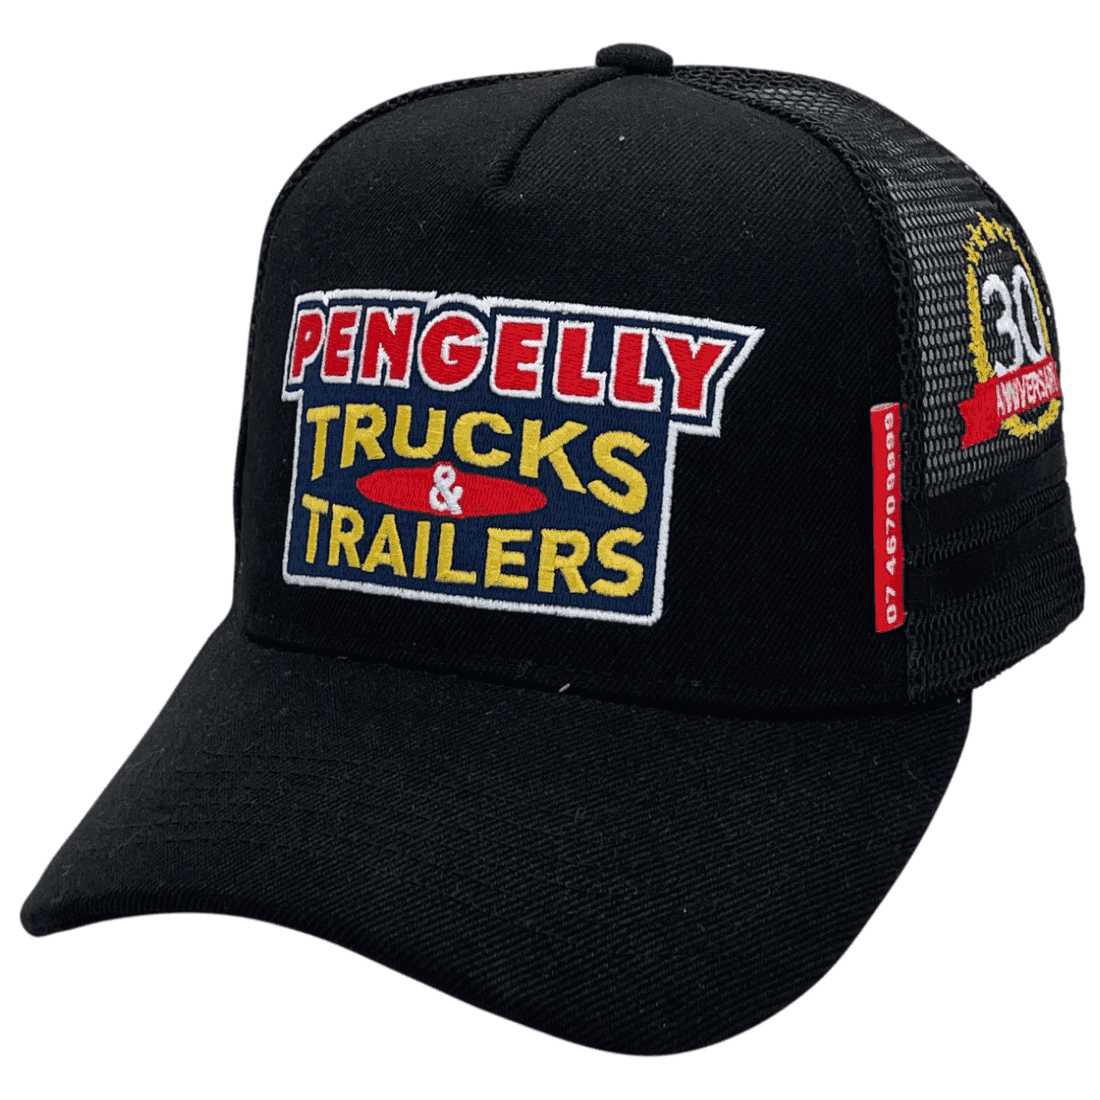 Pengelly Trucks Trailers - Basic Aussie Trucker Hat Western Star-Mack-Kenworth-Freightliner